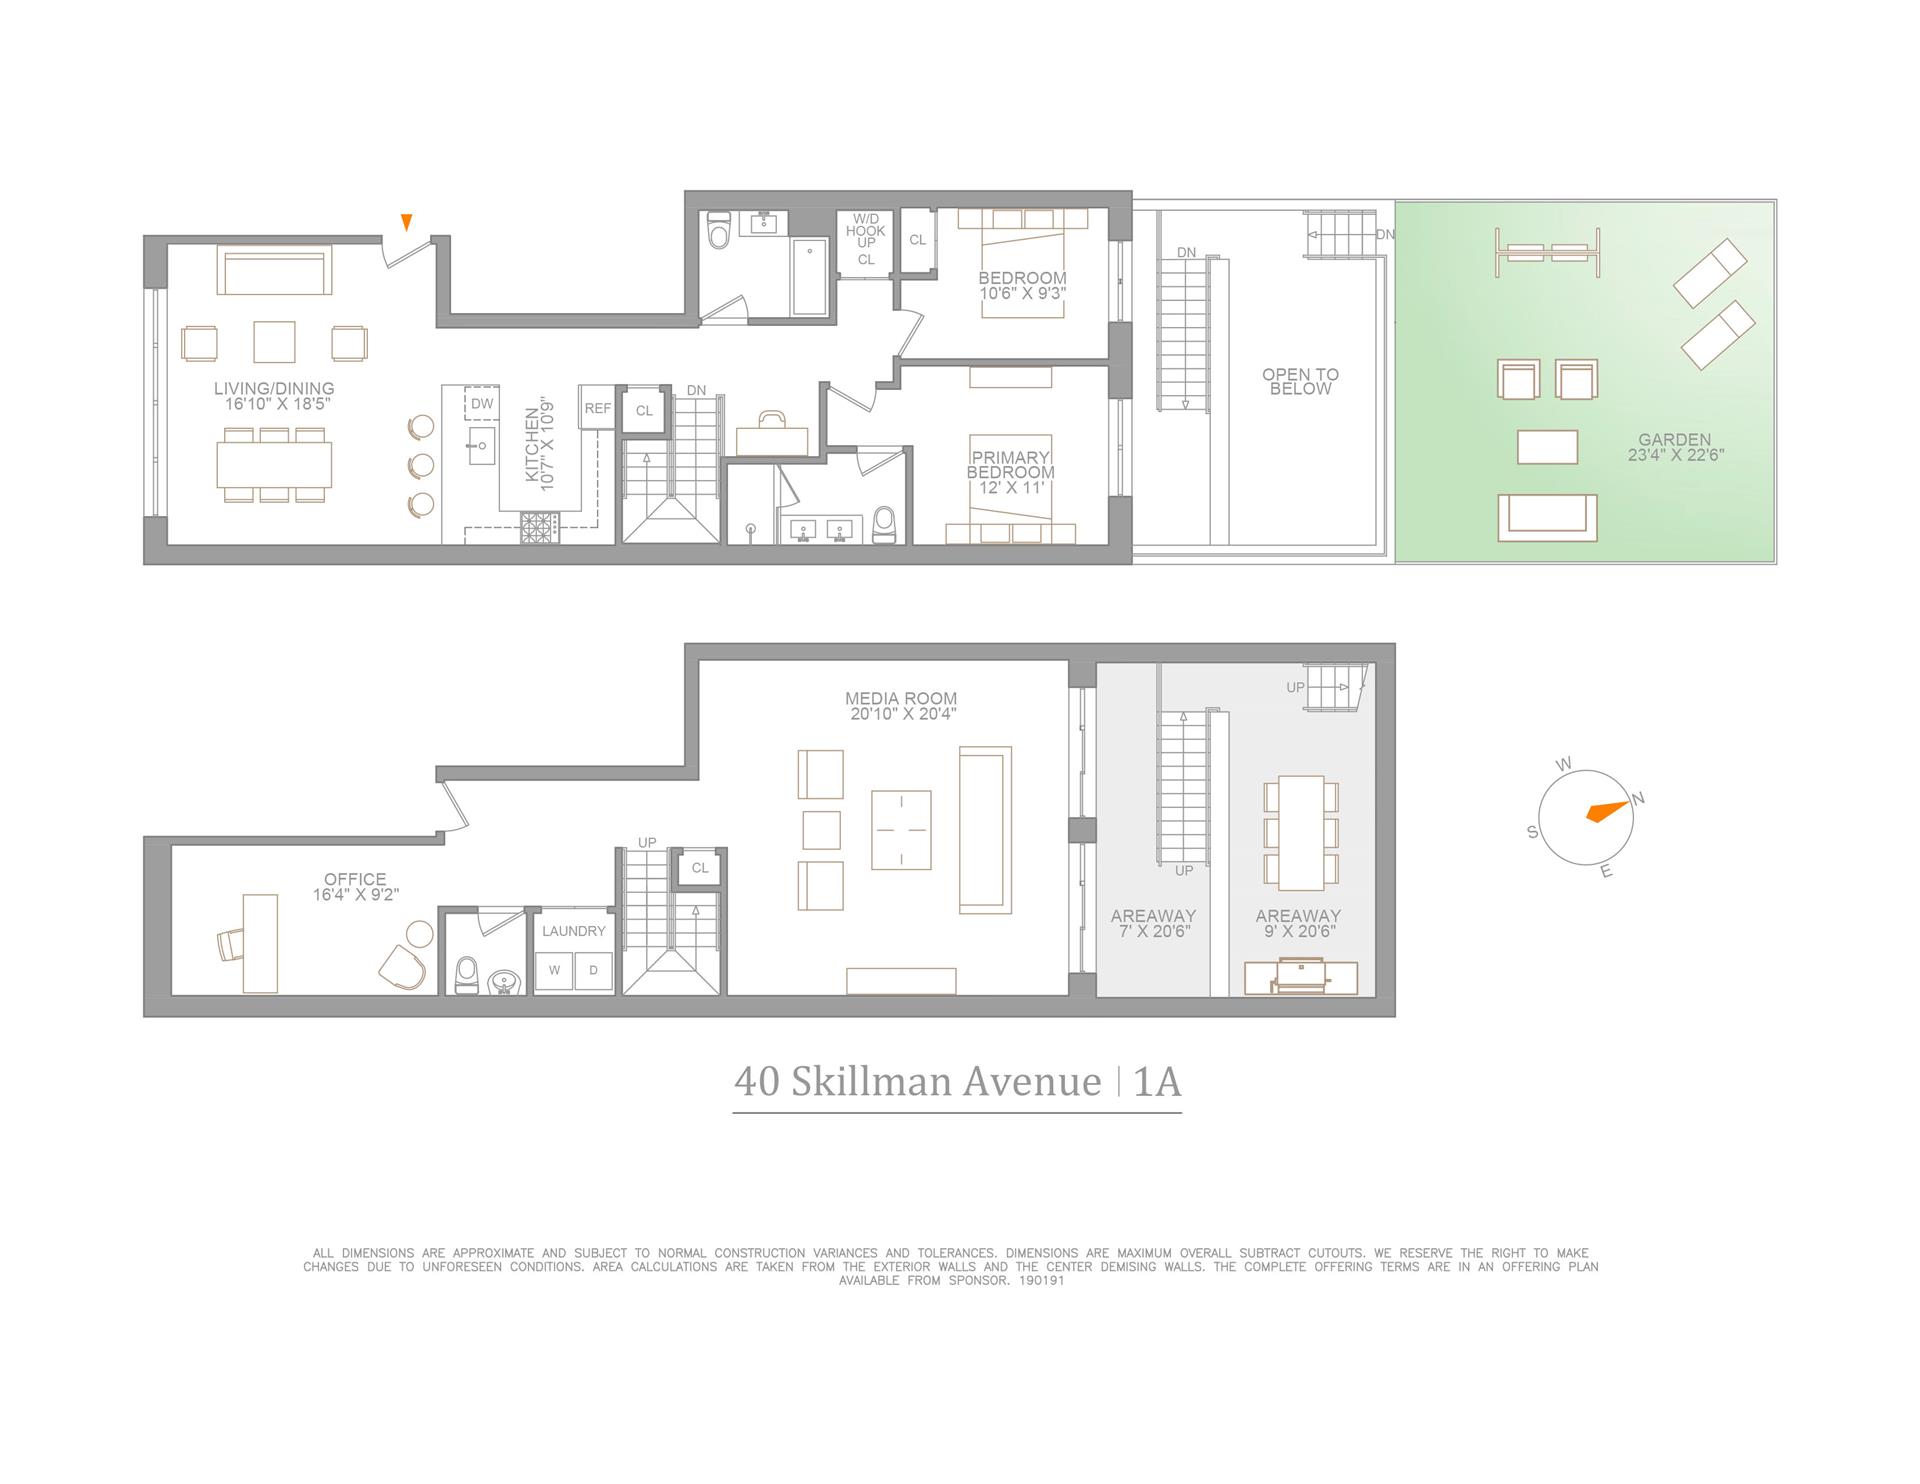 Floorplan for 40 Skillman Avenue, 1A